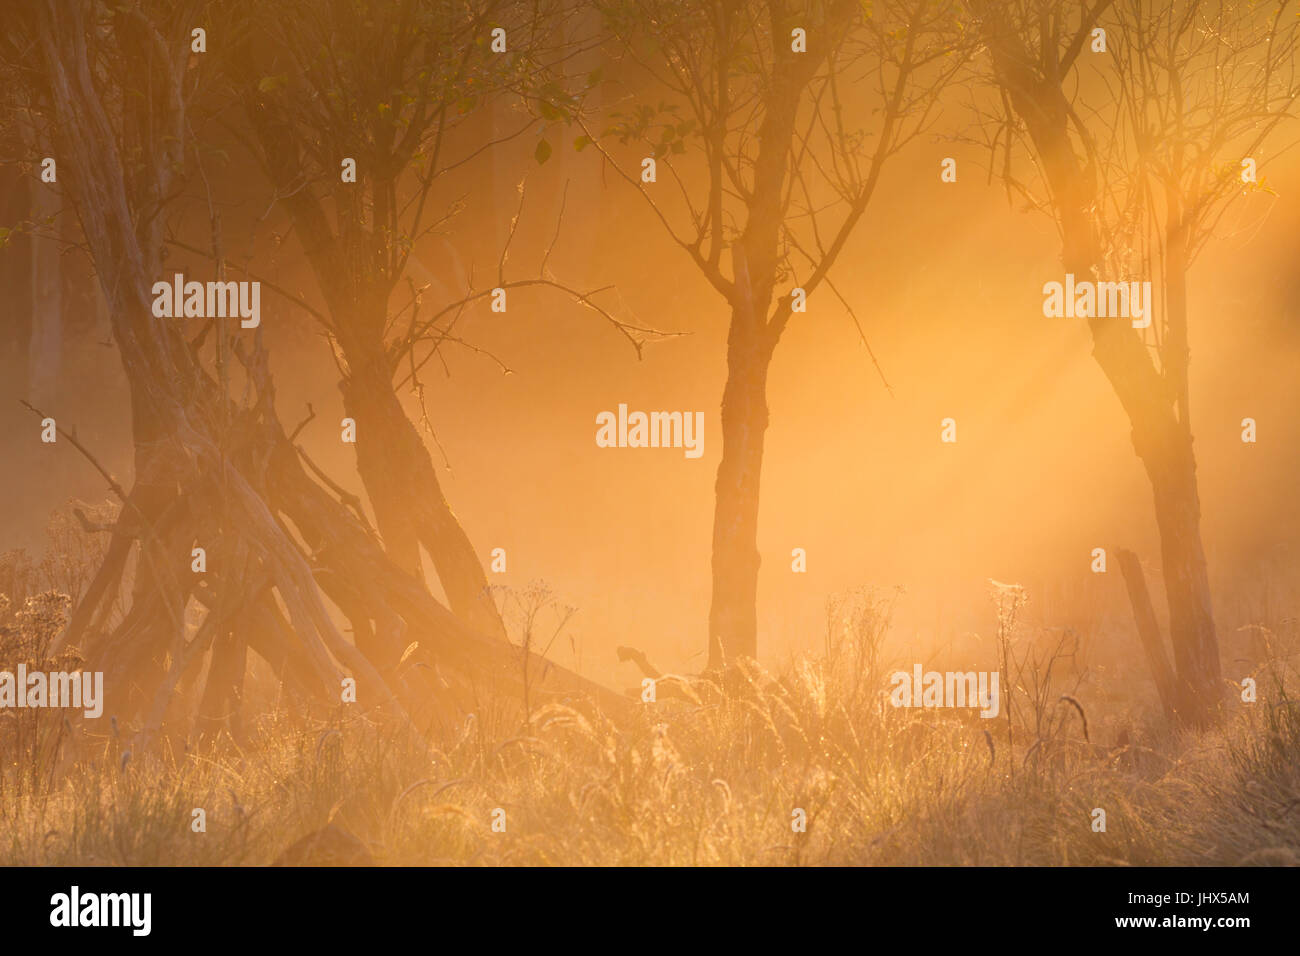 La lumière du soleil tôt le matin sur les arbres dans le brouillard. Photographié sur un beau matin en automne dans les Pays-Bas. Banque D'Images